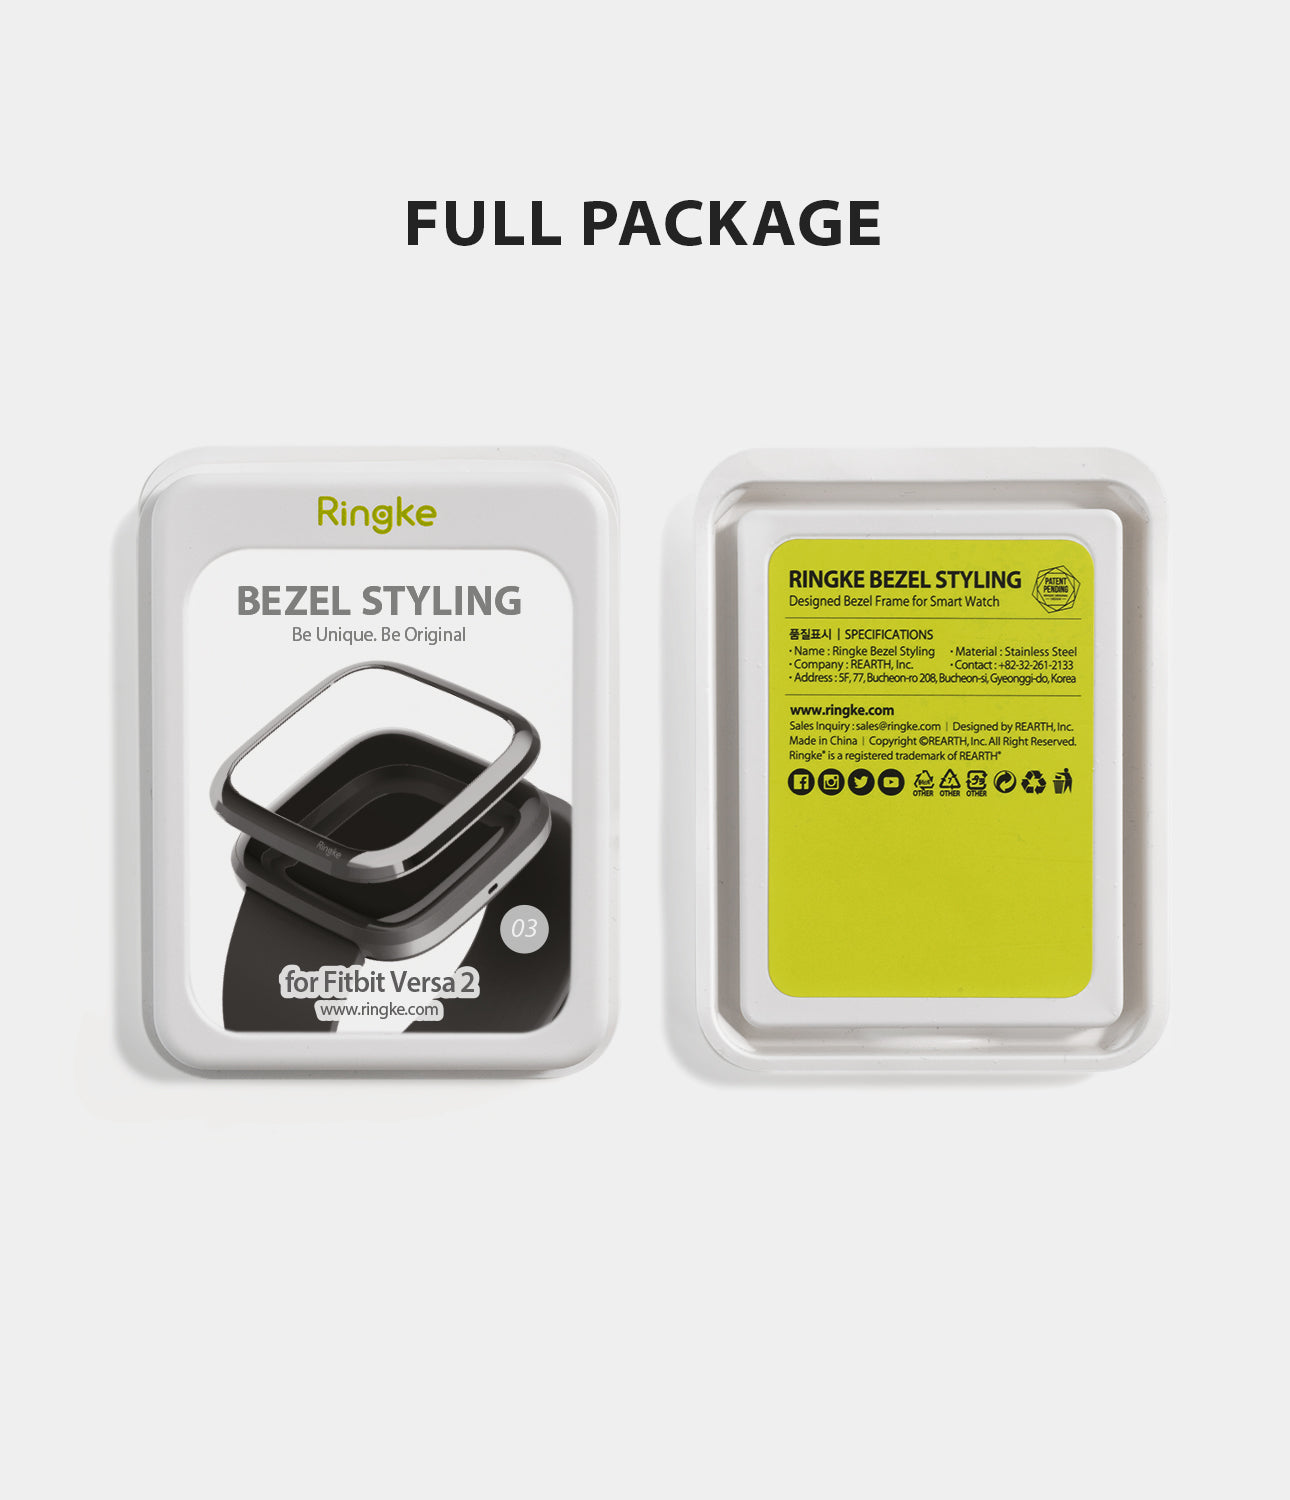 Ringke Bezel Styling Fitbit Versa 2, Full Stainless Steel Frame, Black, 2-03 ST, minimal package